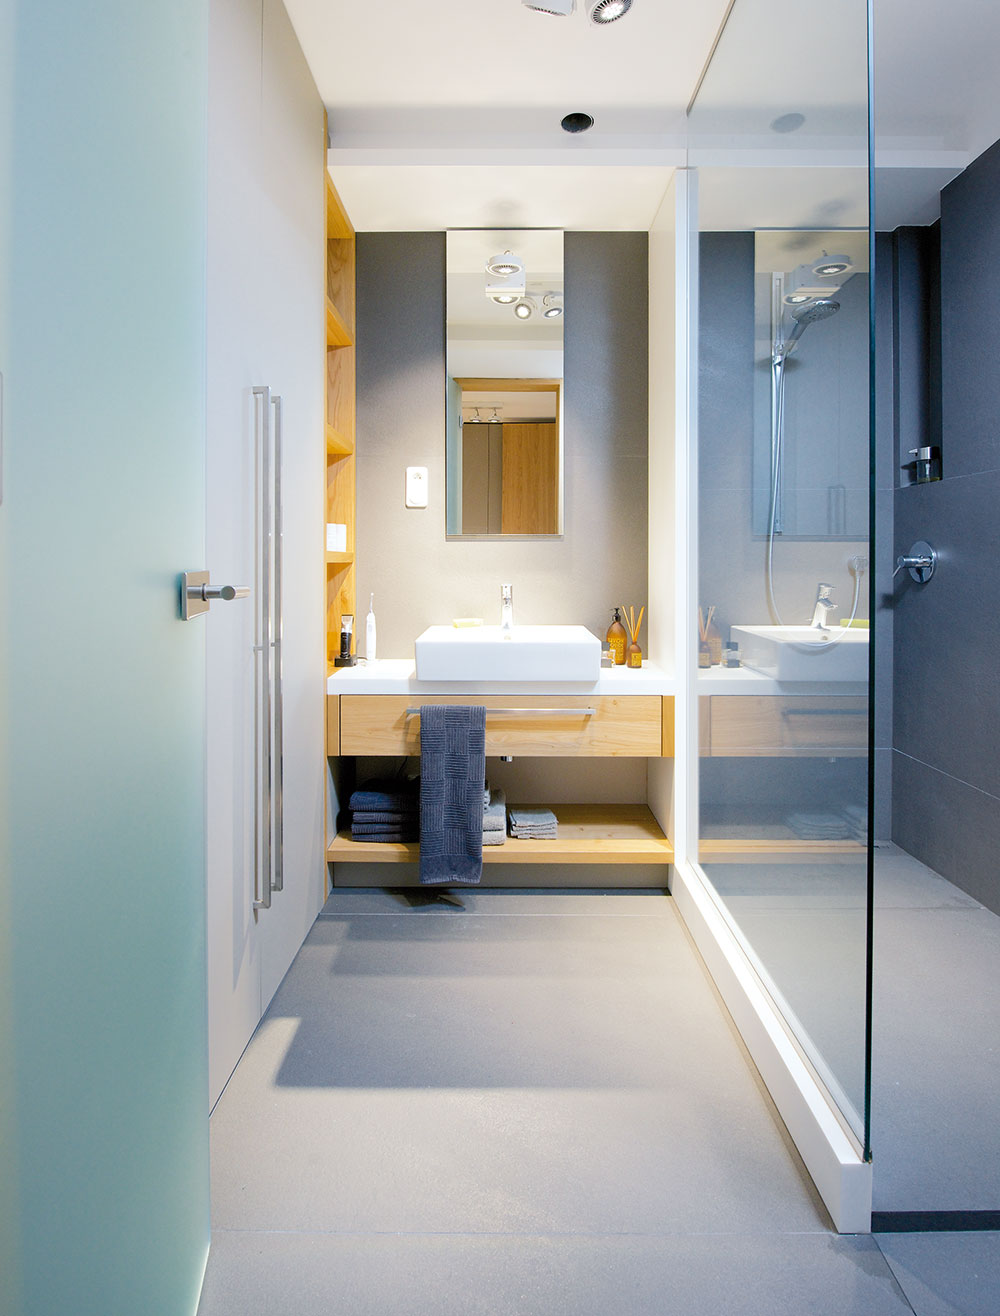 V koupelně se opakuje dřevo a šedé barevné ladění. Funkčnost, preciznost a detail dovedený k dokonalosti.FOTO IVETA KOPICOVÁ